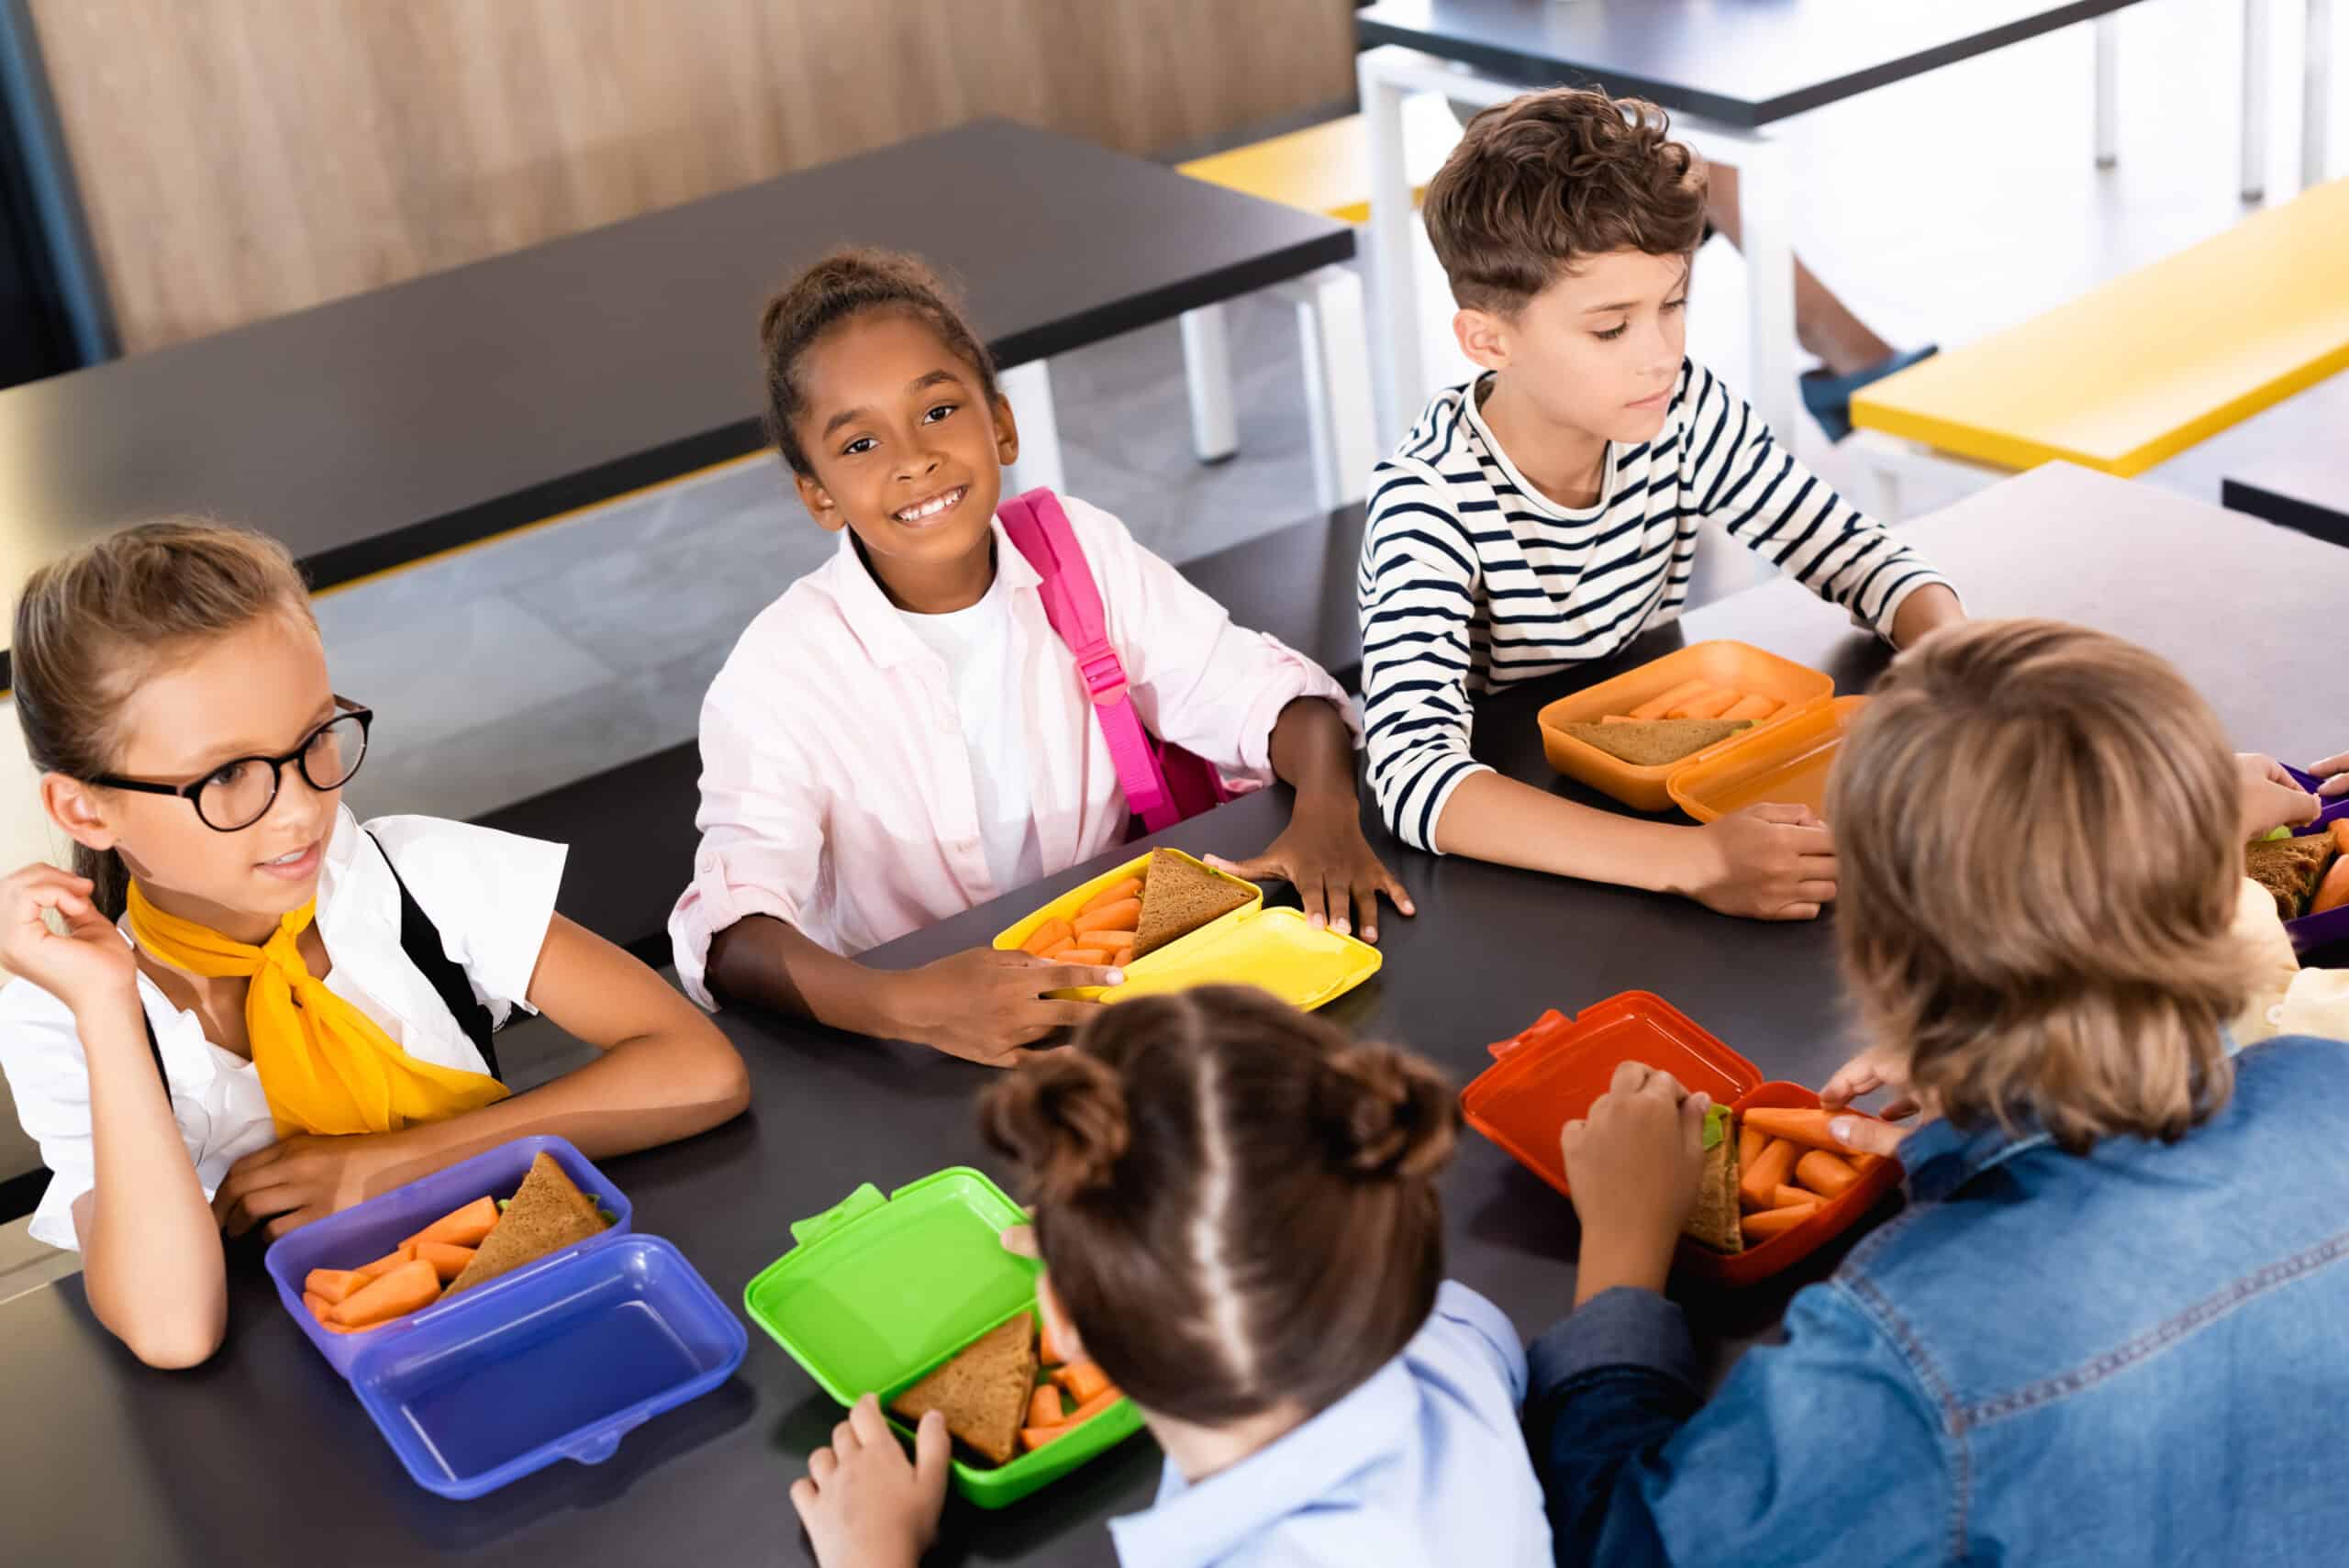 Foto van kinderen die in een schoolkantine brood eten uit een trommeltje